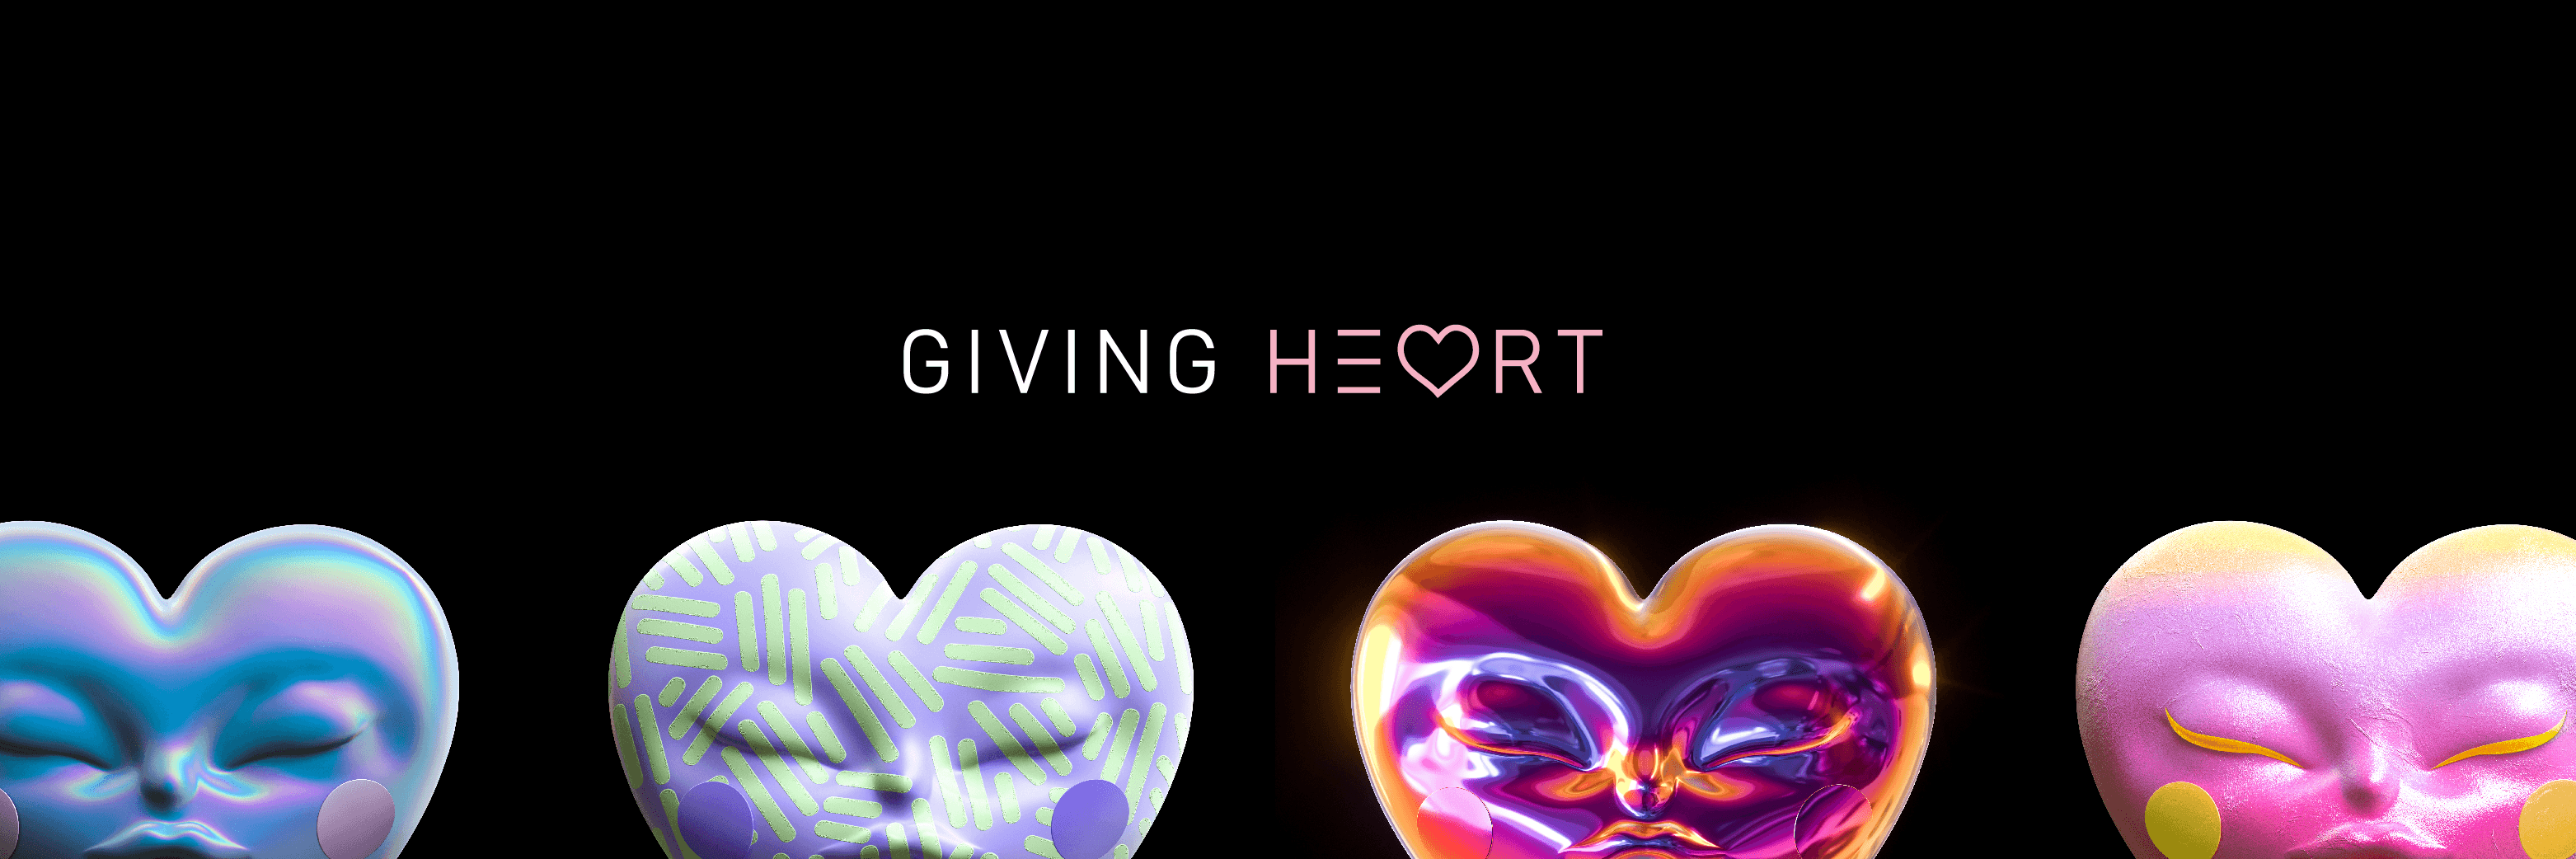 givingheartnft 橫幅